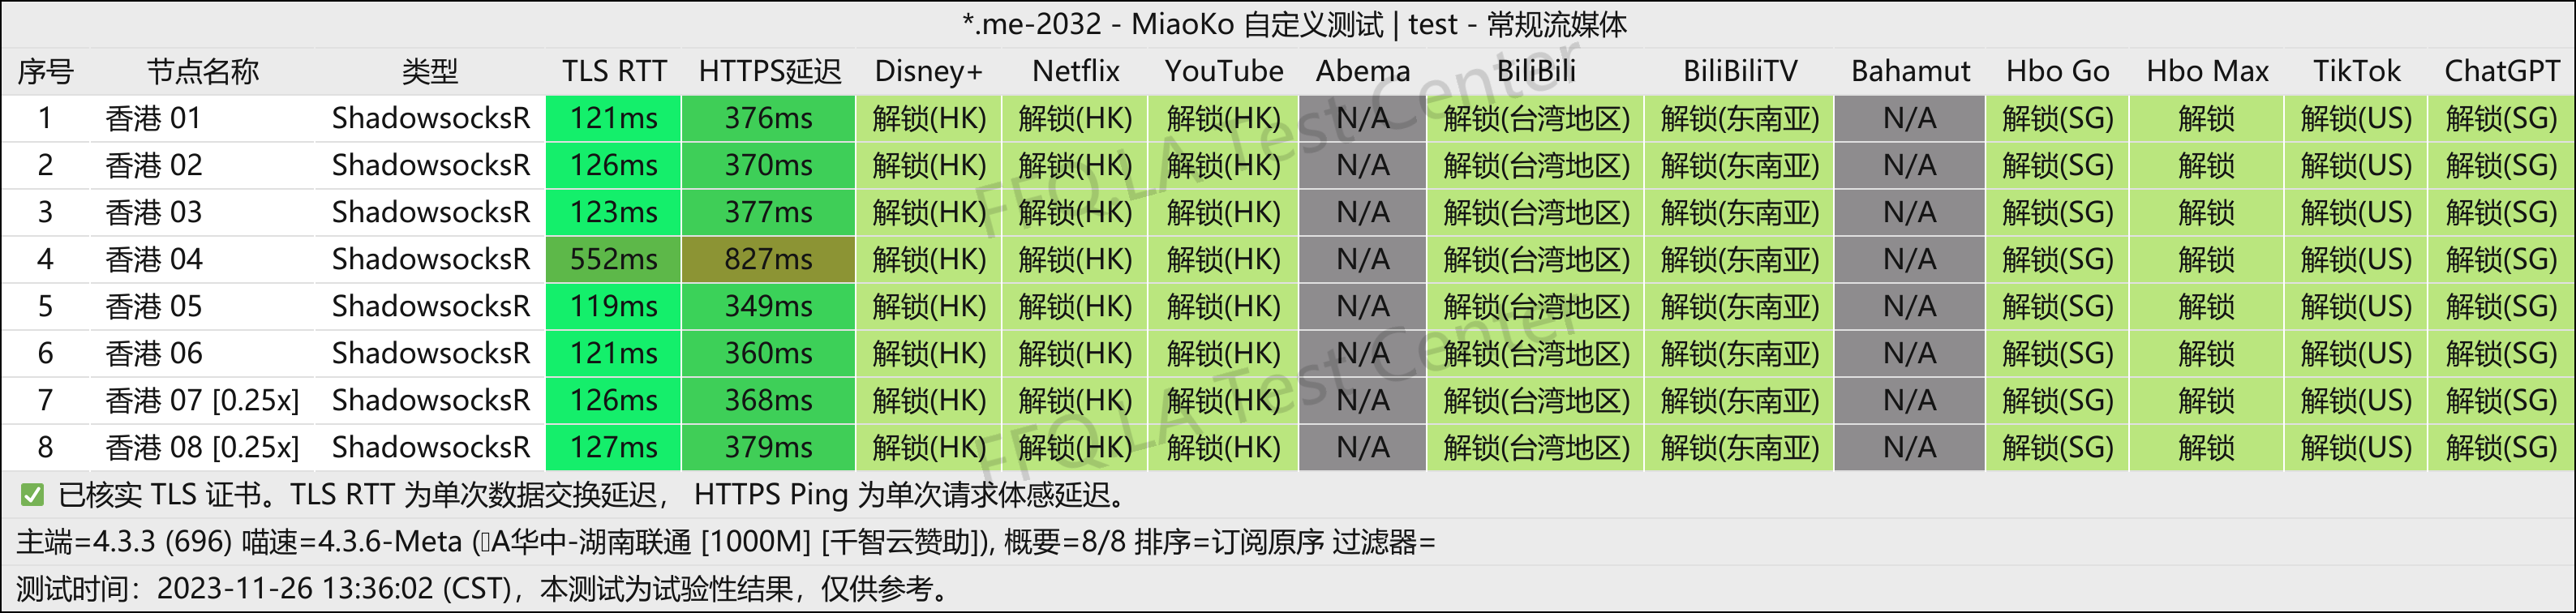 近期流媒体测试数据 - 11.26.2023 - 次元链接 MiaoKo- .me-2032-test.png